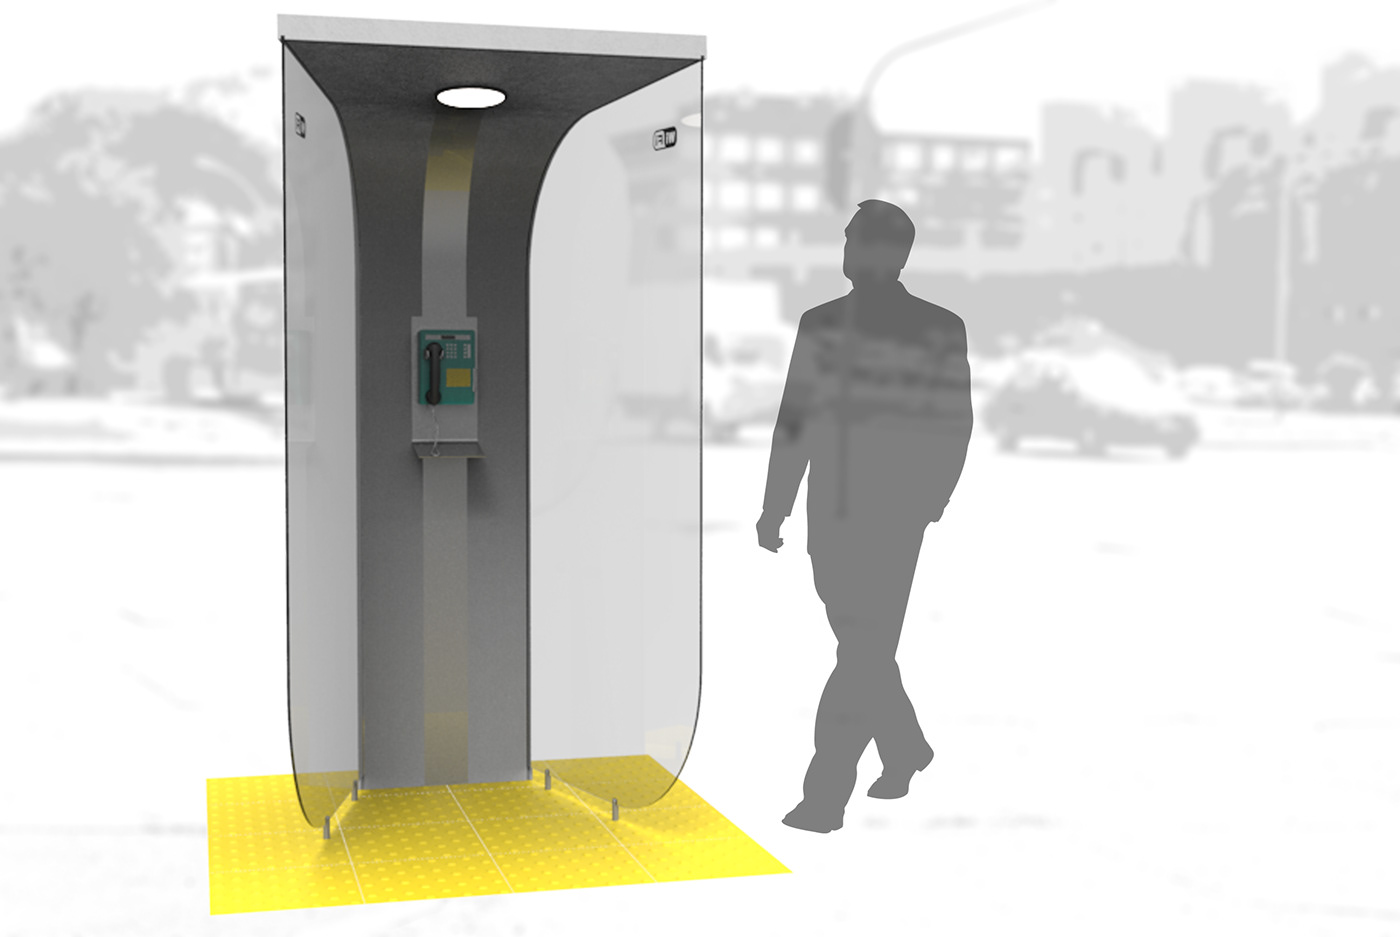 Modelagem 3D Orelhão publico rendering telefone telefone público urbano